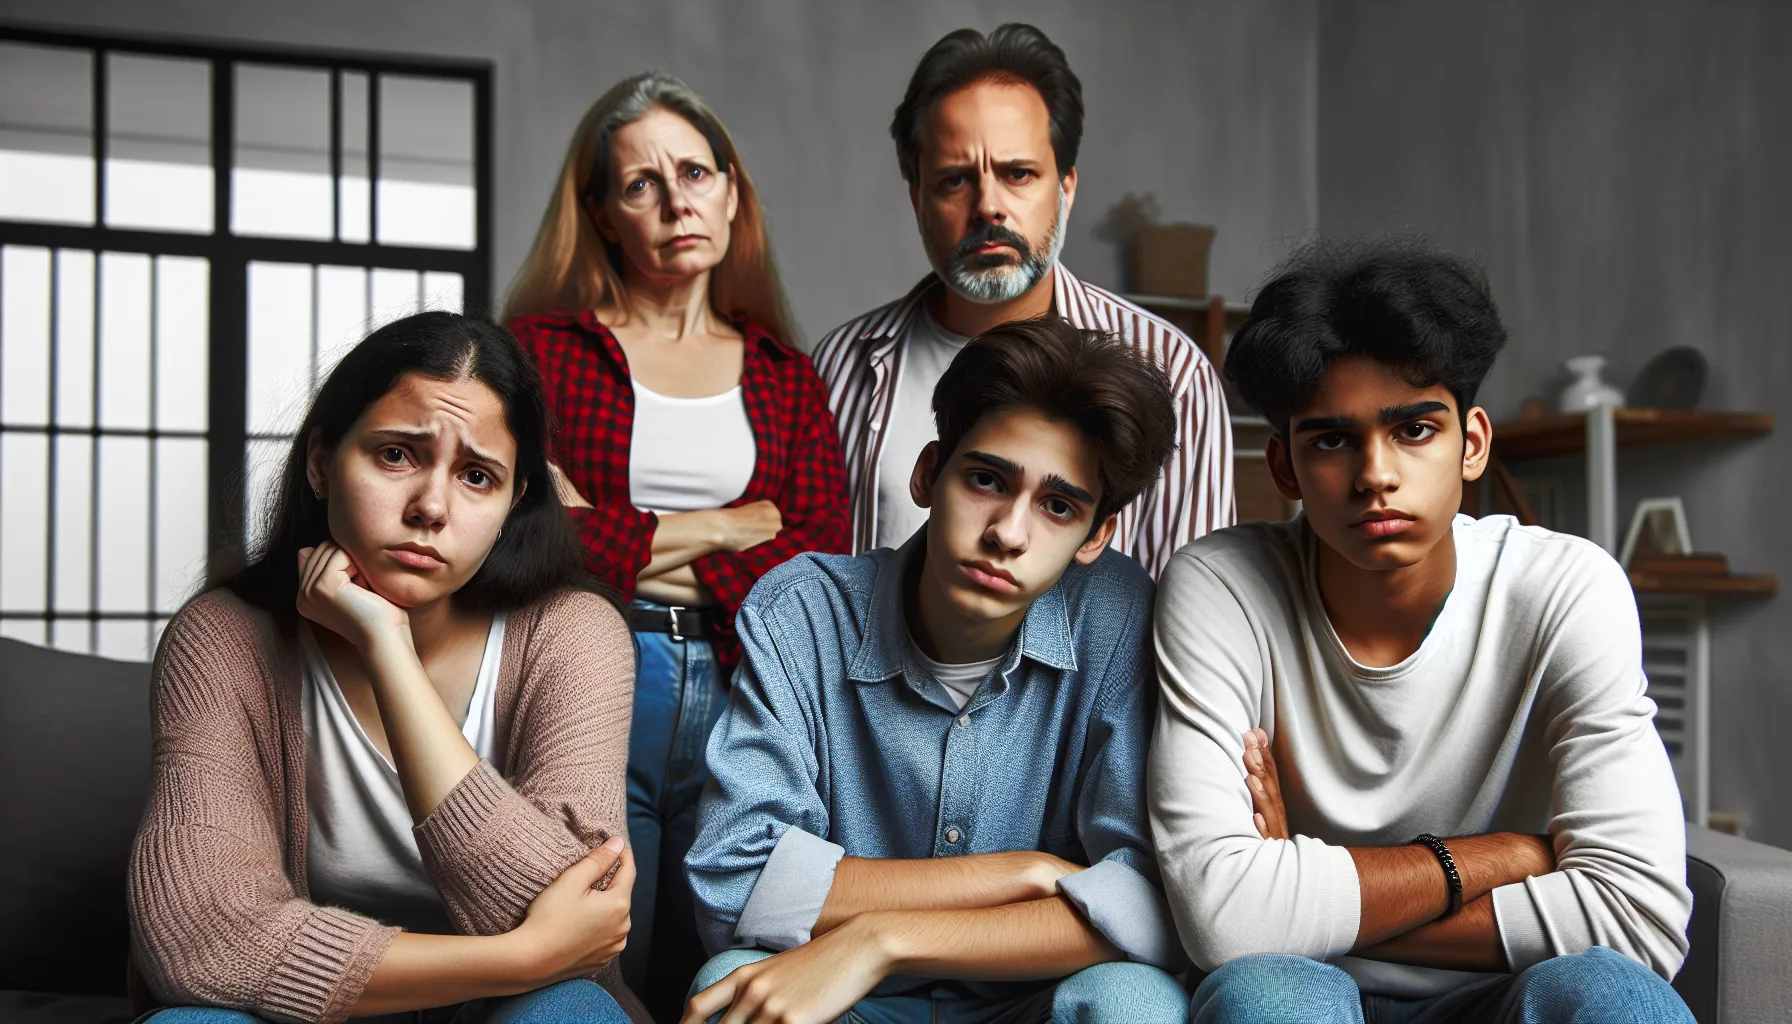 Imagen ilustrativa de una familia con expresiones de incomodidad y tensión, representando las consecuencias del tabú en relaciones familiares cercanas.